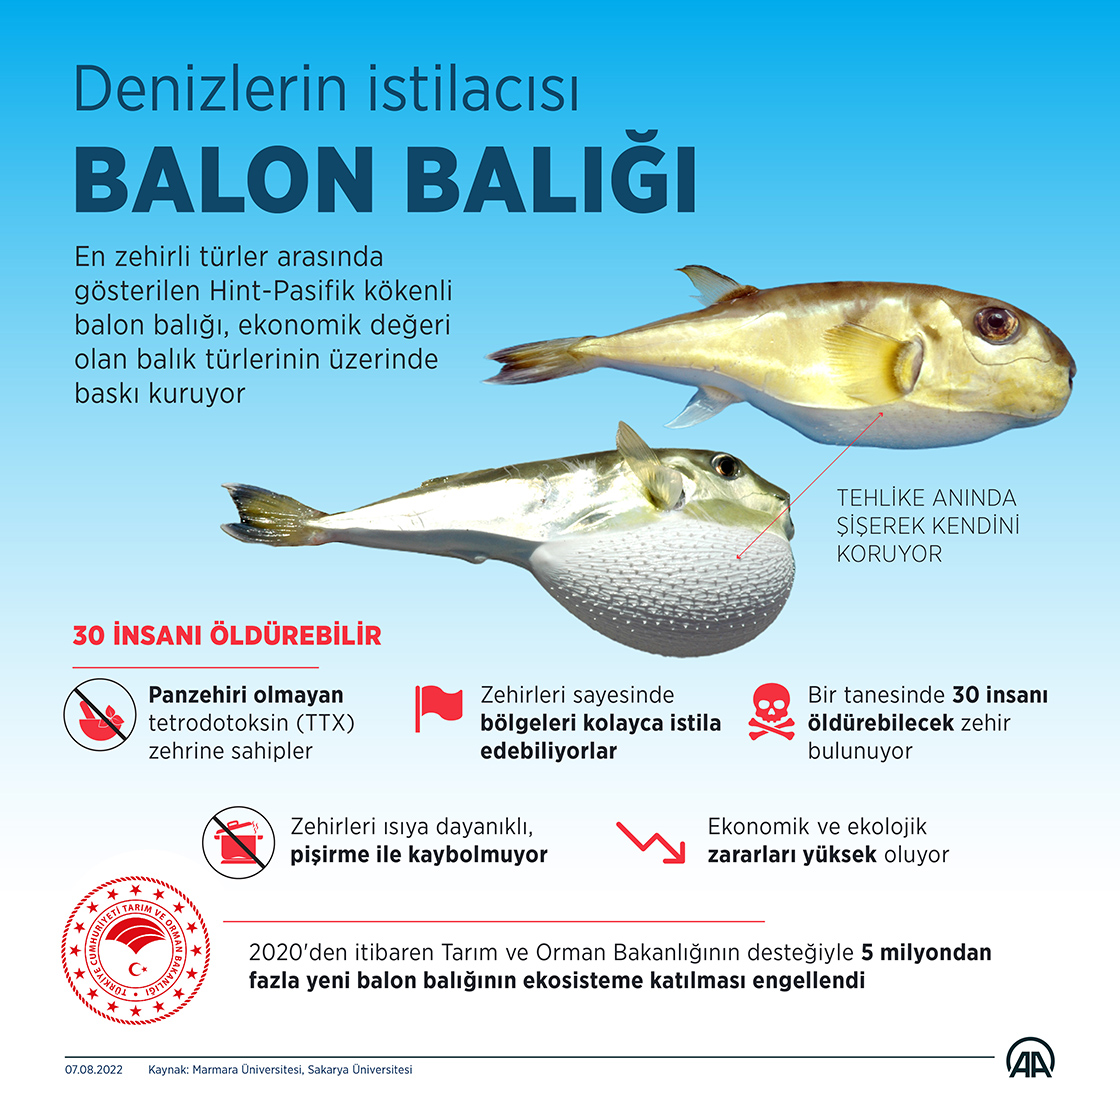 Bakanlığın desteğiyle 5 milyondan fazla balon balığının ekosisteme katılımı engellendi